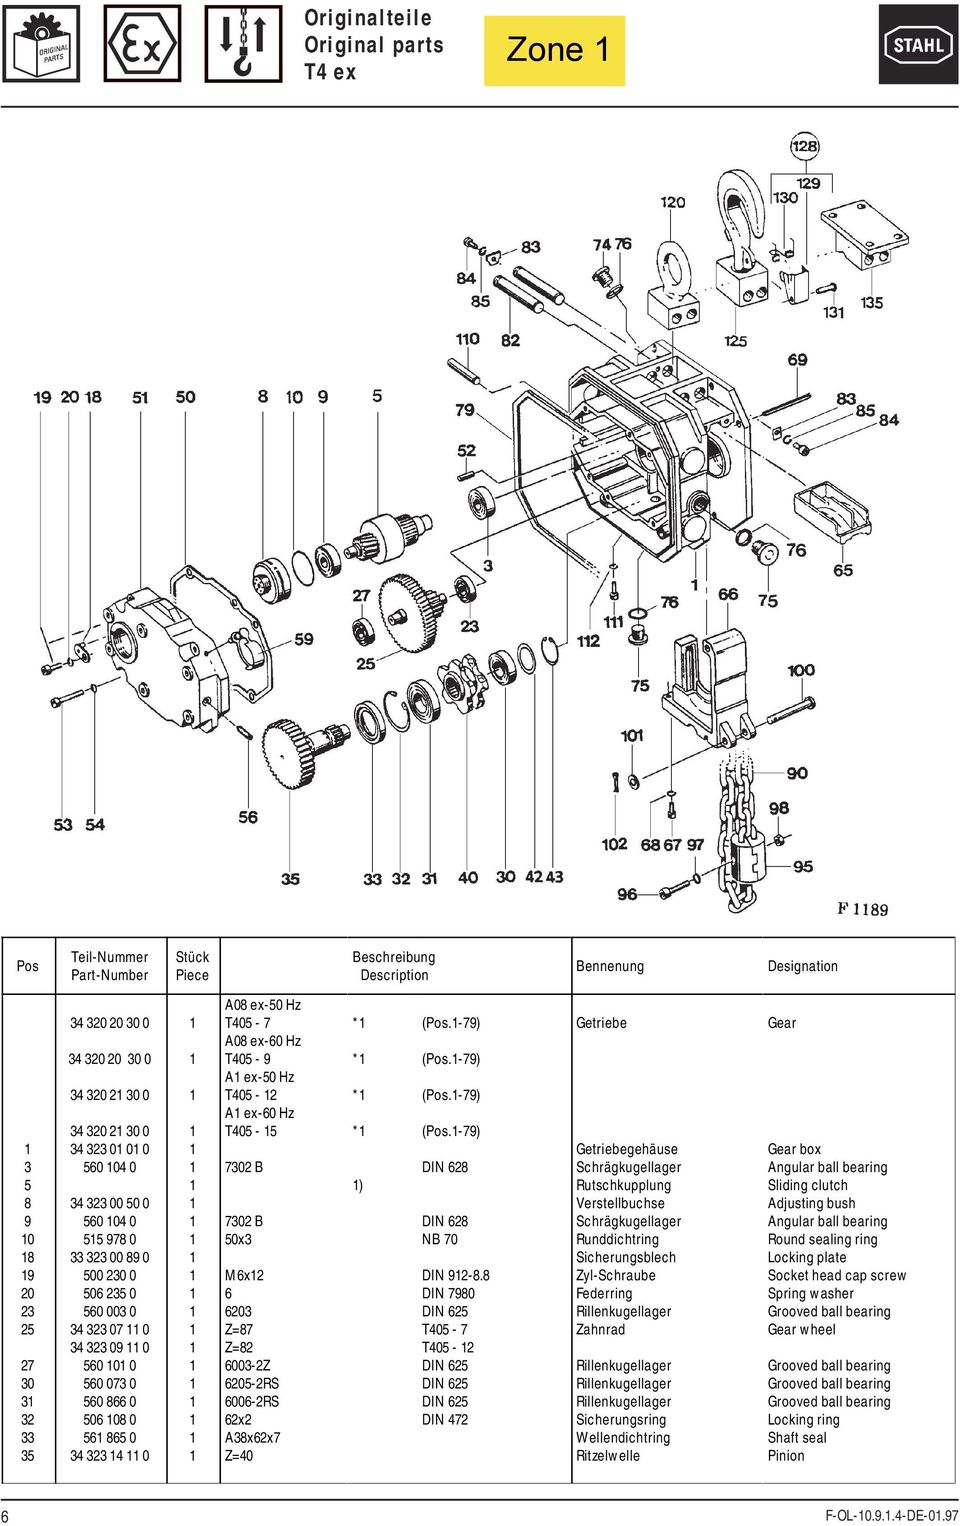 DIN T0-7 T0 - DIN DIN DIN DIN 7 Getriebe Getriebegehäuse Schrägkugellager Rutschkupplung Verstellbuchse Schrägkugellager Sicherungsblech Zahnrad